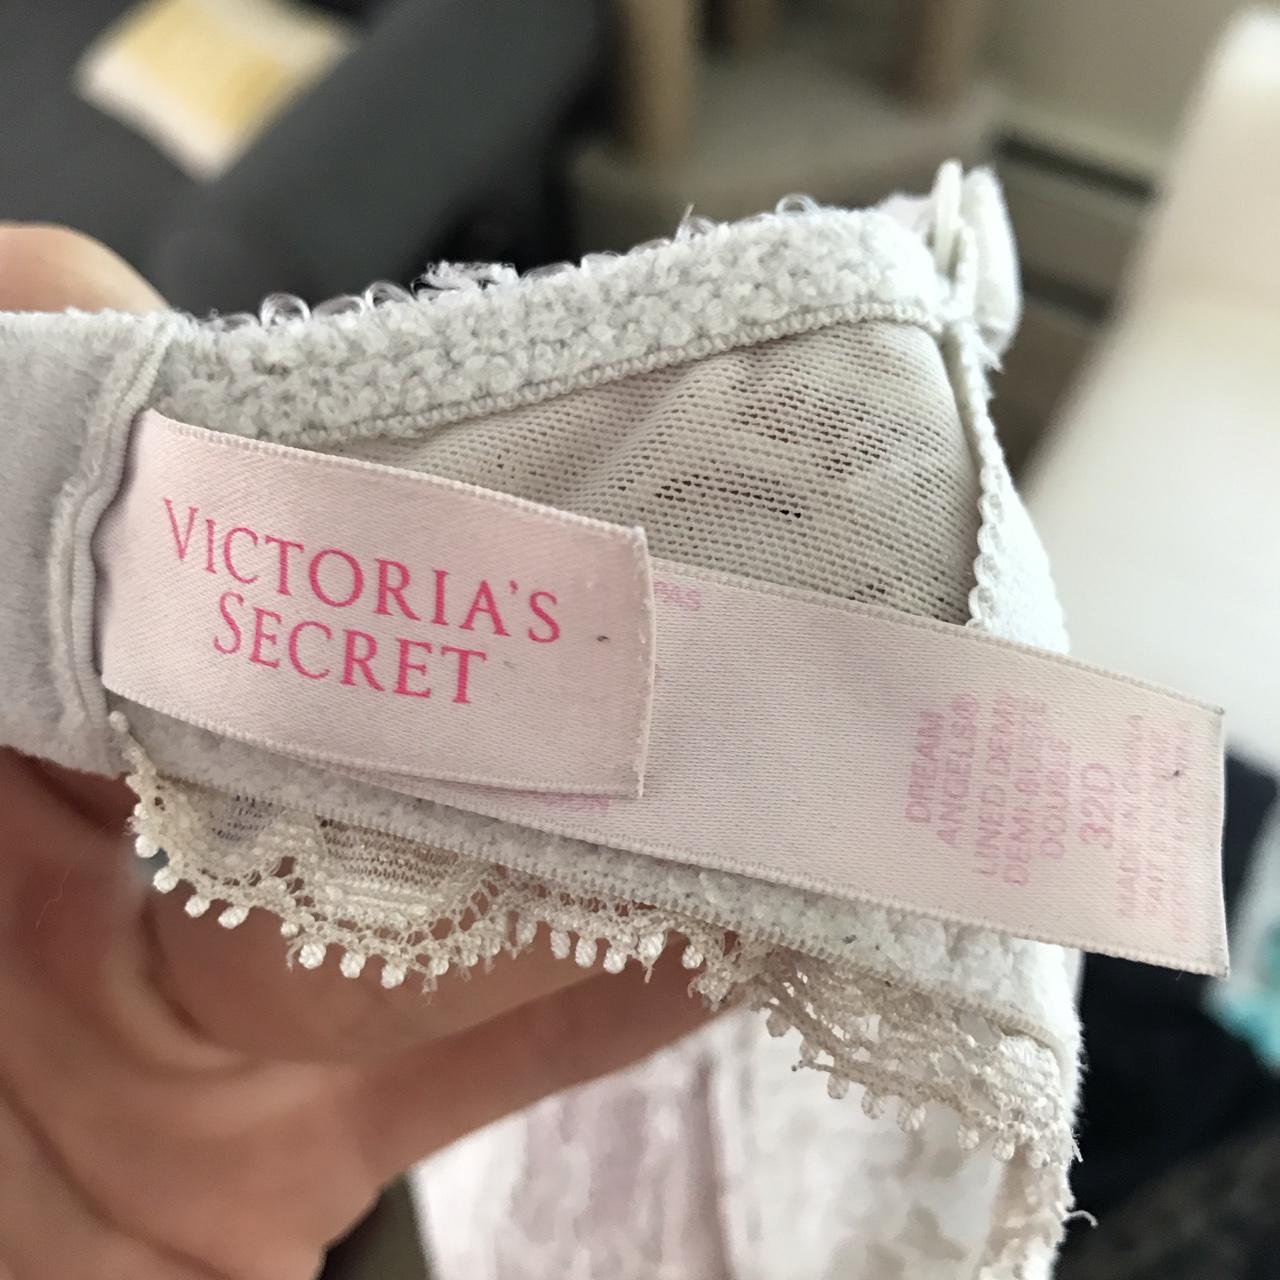 Victorias secret-32d-bra - Depop